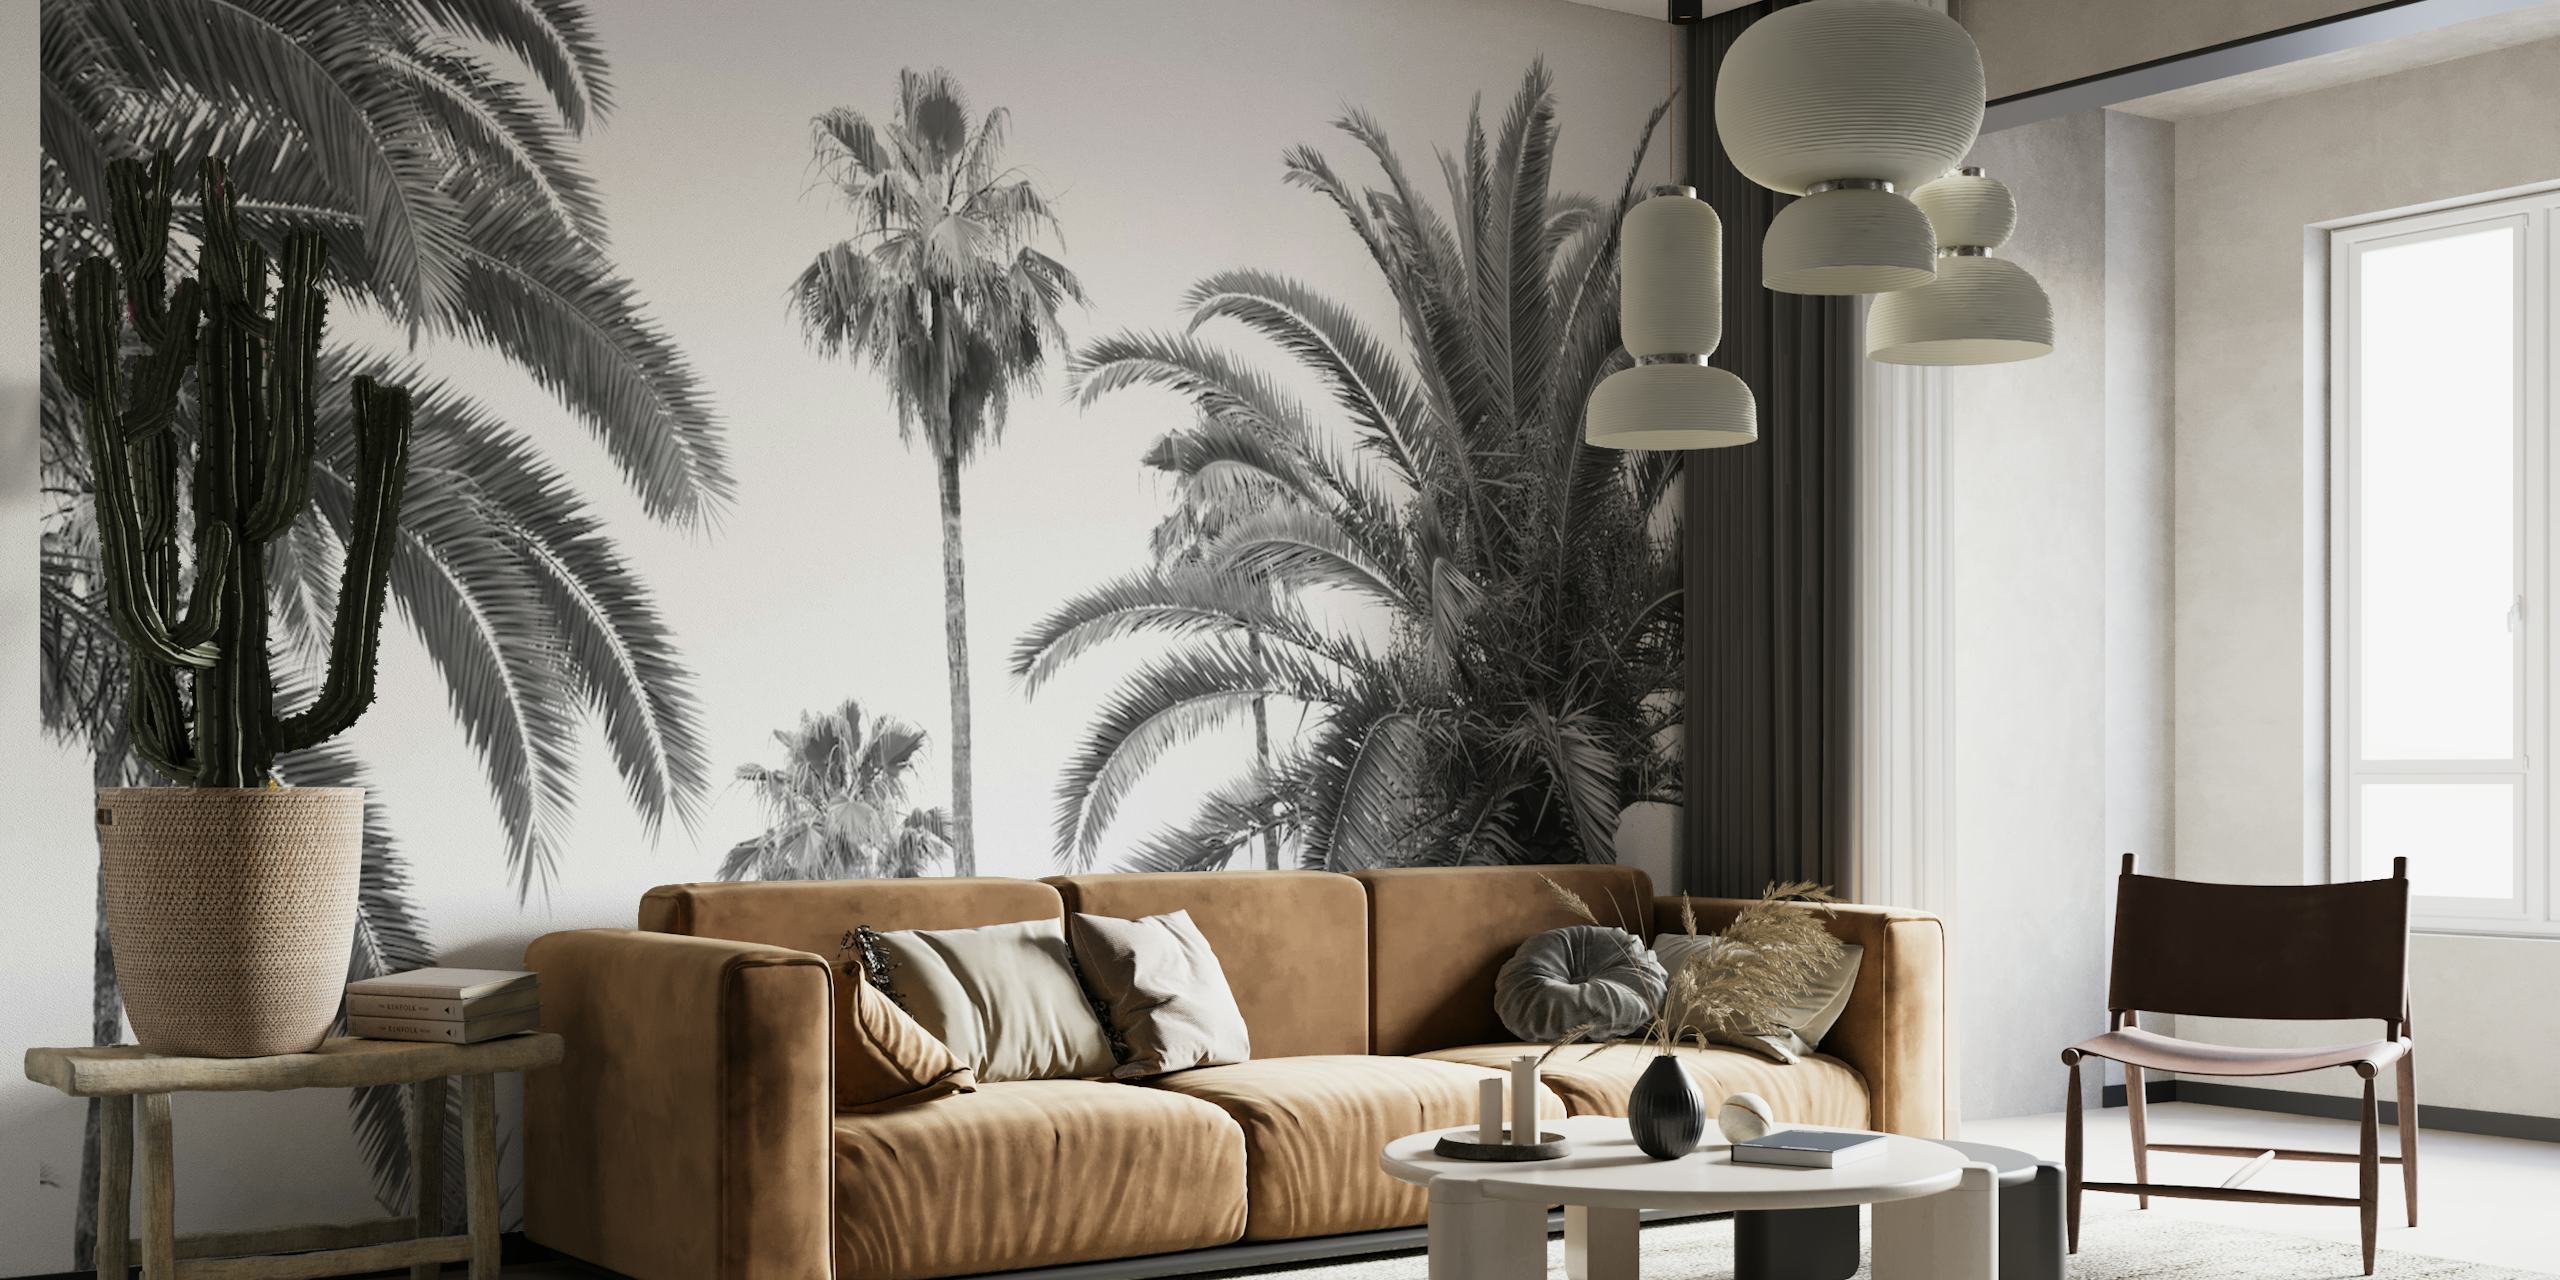 Sort og hvidt vægmaleri af høje palmer mod en klar himmel